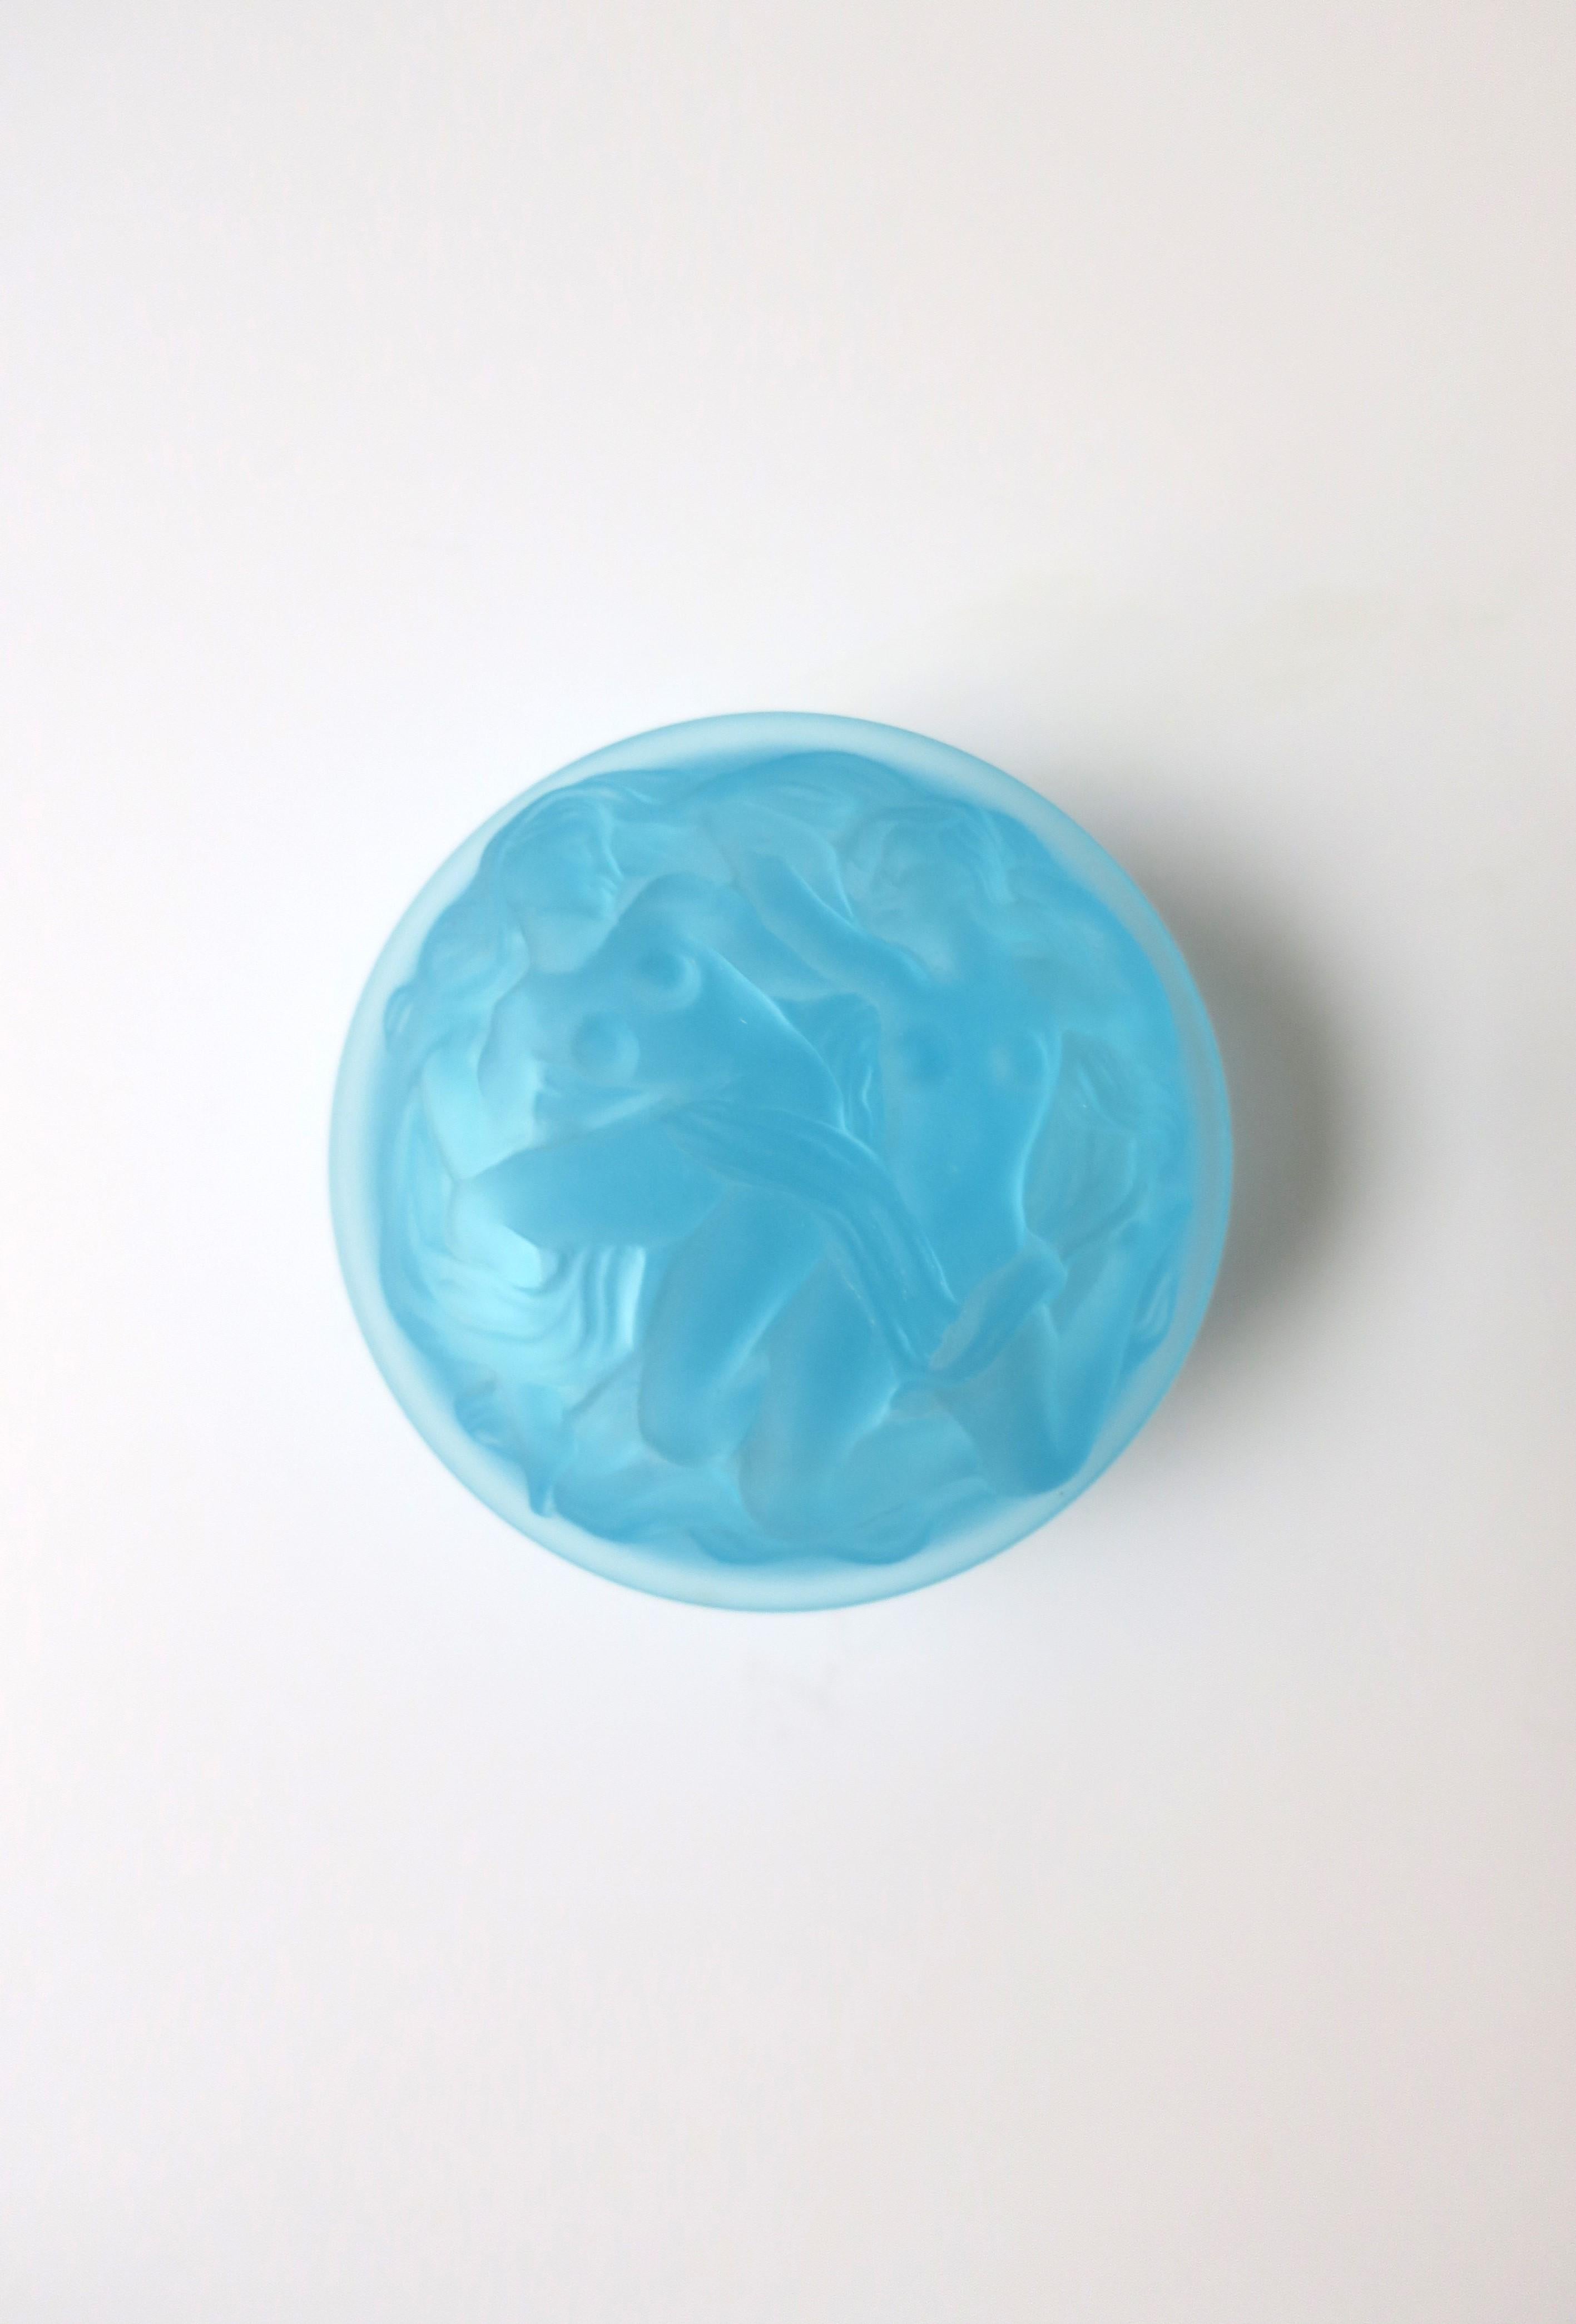 Magnifique boîte en verre de Bohême translucide bleu ciel avec un relief féminin dans le style Art déco, vers la fin du XXe siècle, République tchèque. Cette boîte ronde est ornée d'un haut relief de femmes sur le couvercle et le pourtour de la